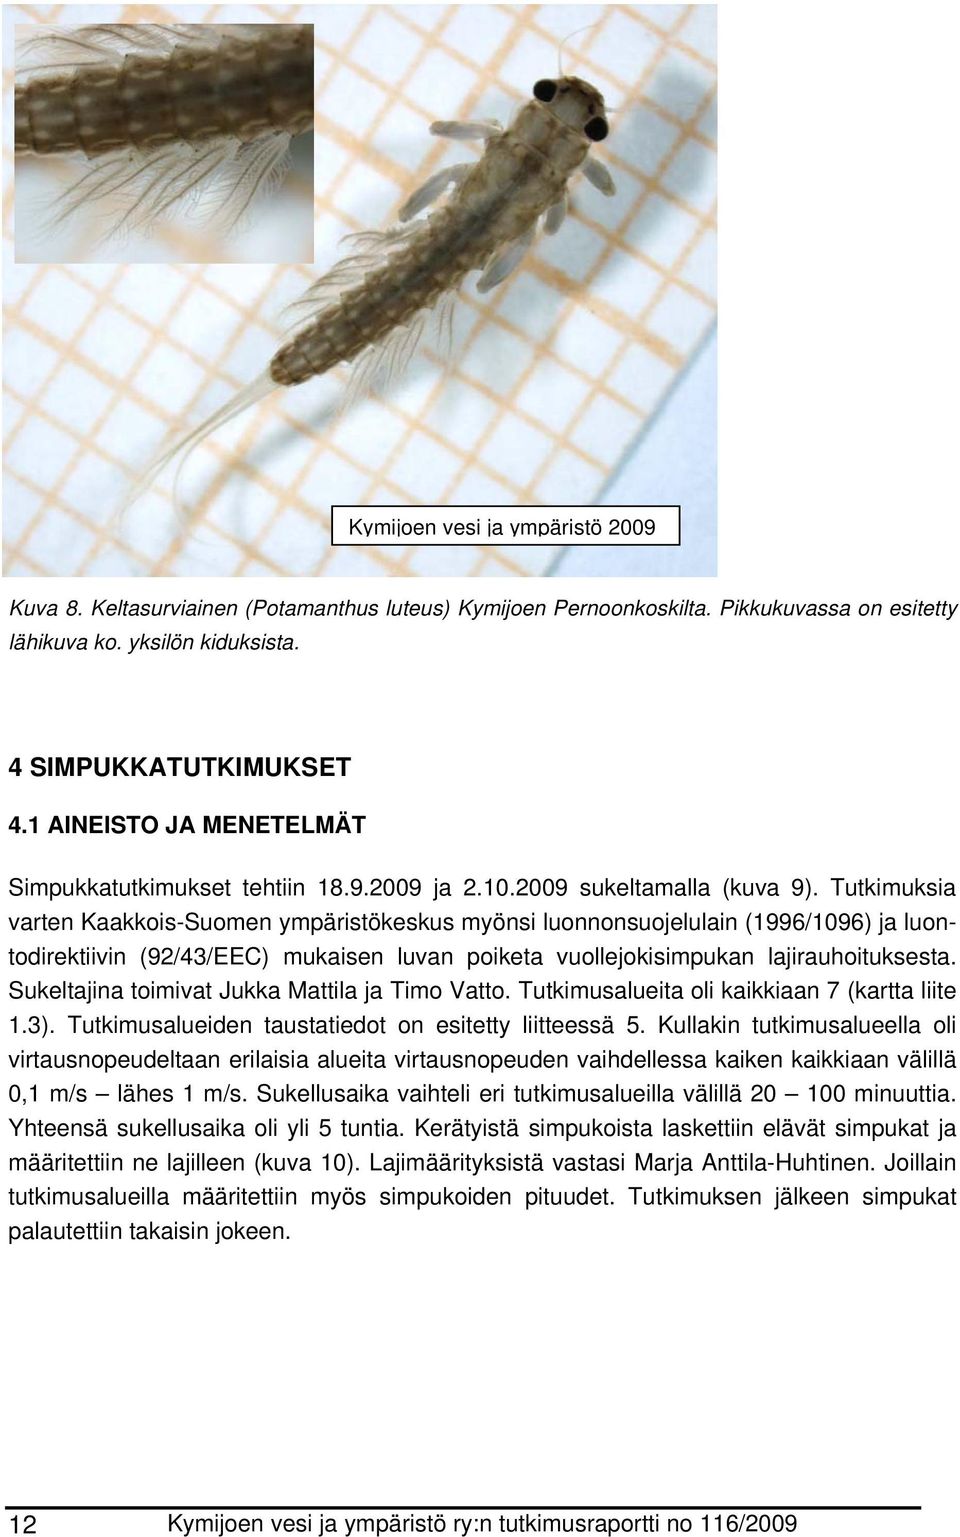 Tutkimuksia varten Kaakkois-Suomen ympäristökeskus myönsi luonnonsuojelulain (1996/1096) ja luontodirektiivin (92/43/EEC) mukaisen luvan poiketa vuollejokisimpukan lajirauhoituksesta.